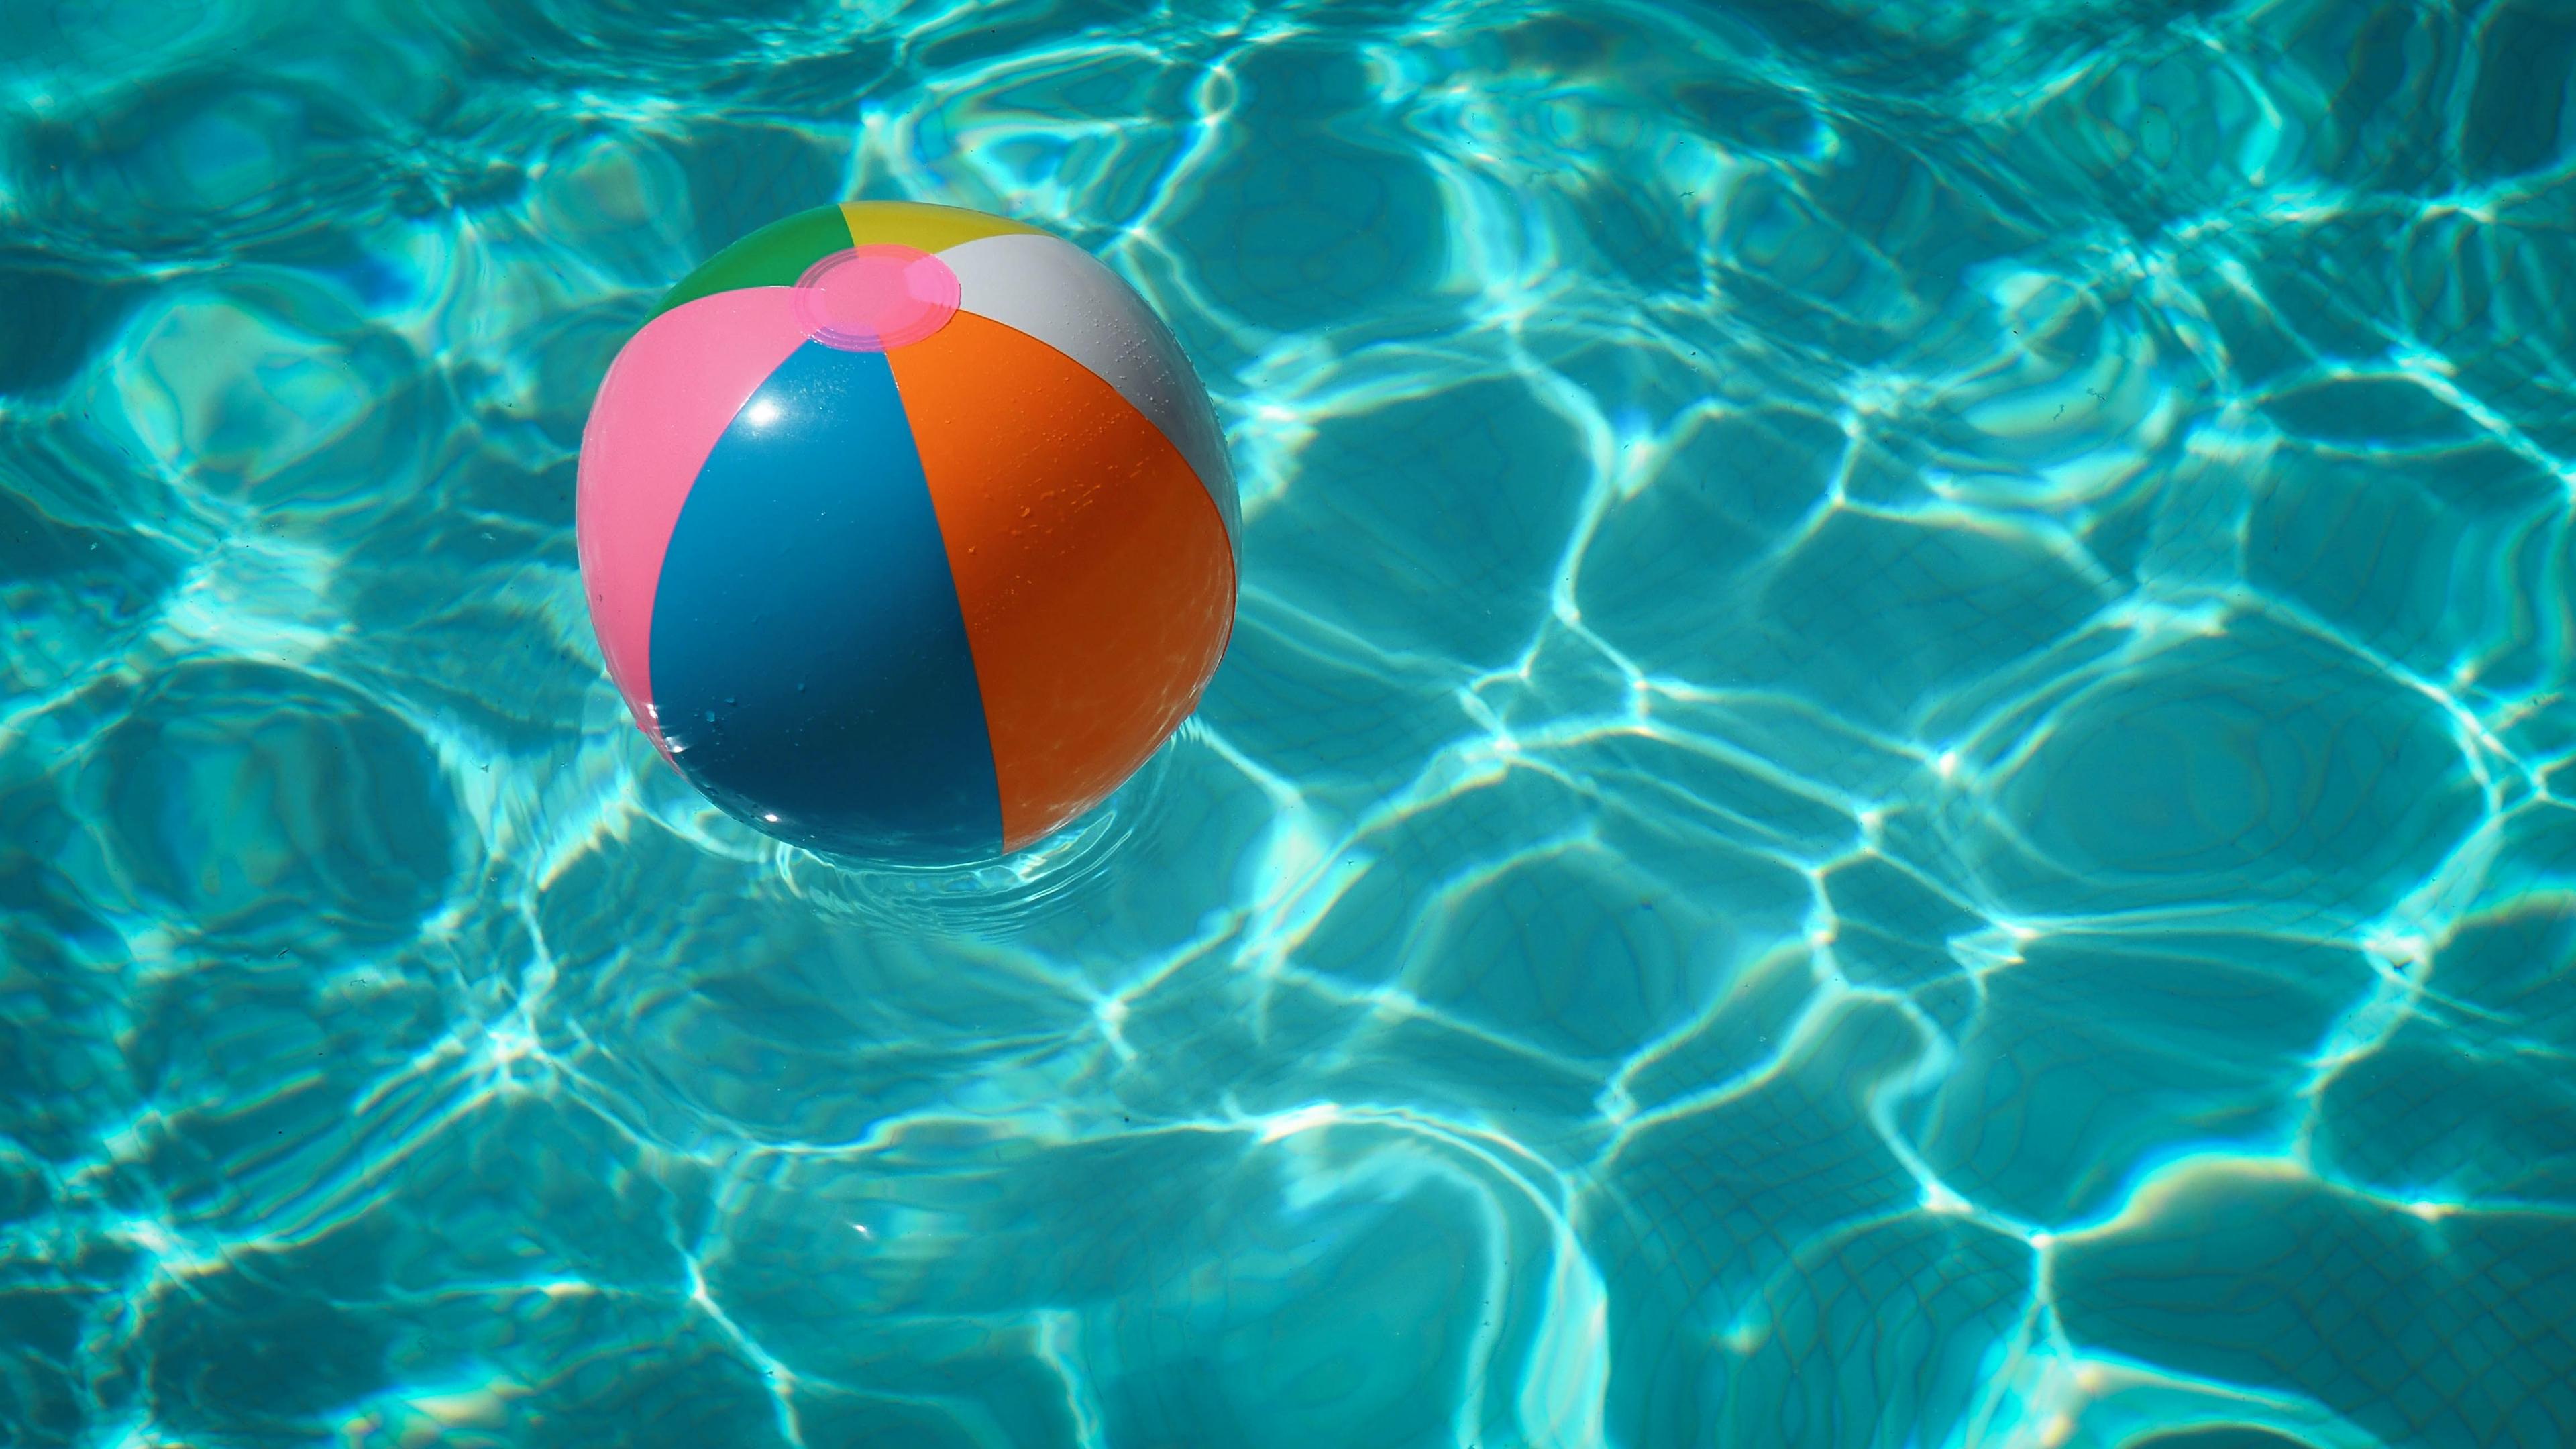  A beach ball in a pool. 